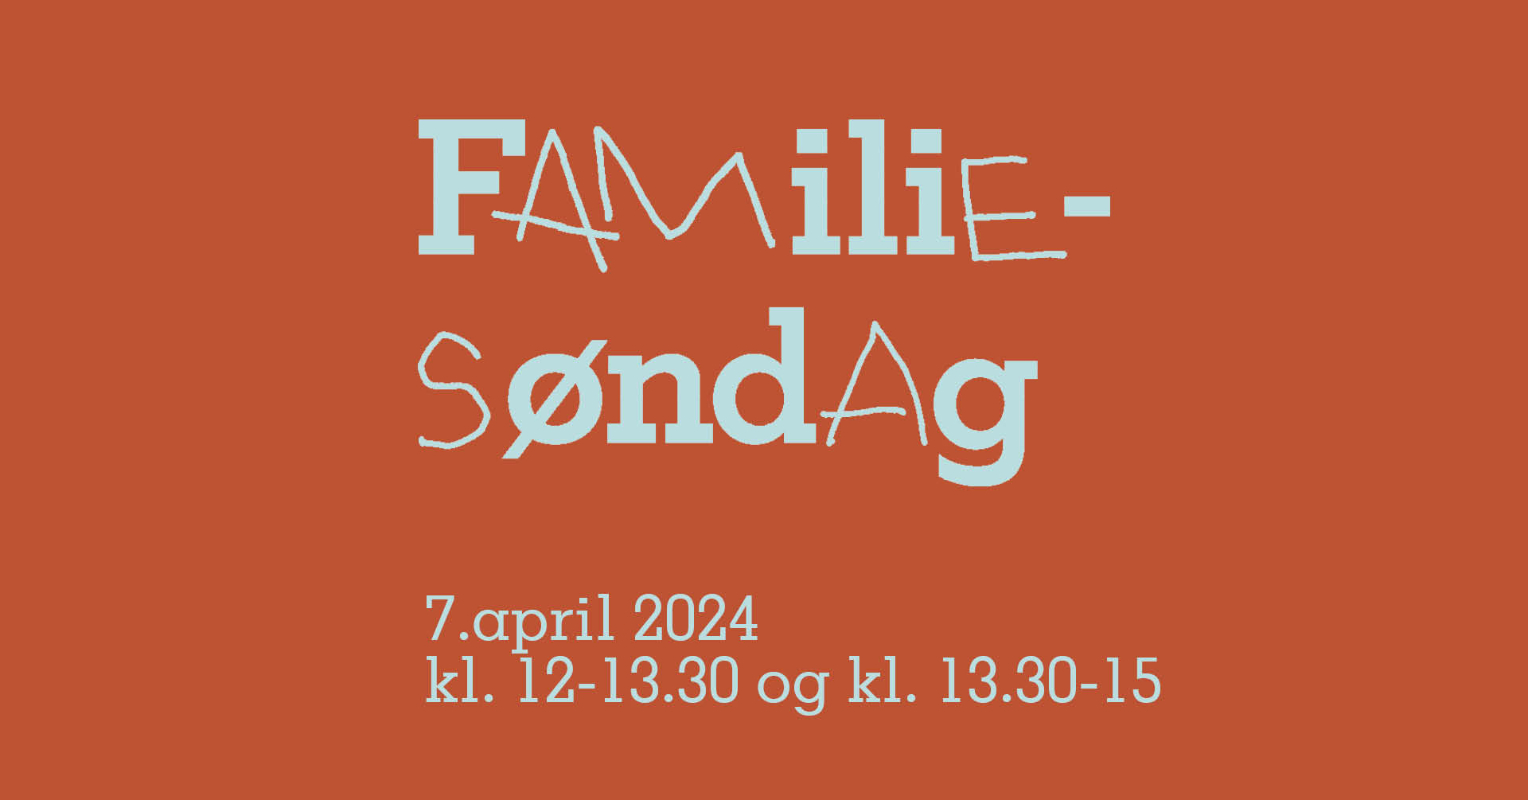 May be an image of text that says 'FAMiliE- SondAg 7.april 7.april2024 7. 2024 kl. 12-13.30 og kl. 13.30-15'